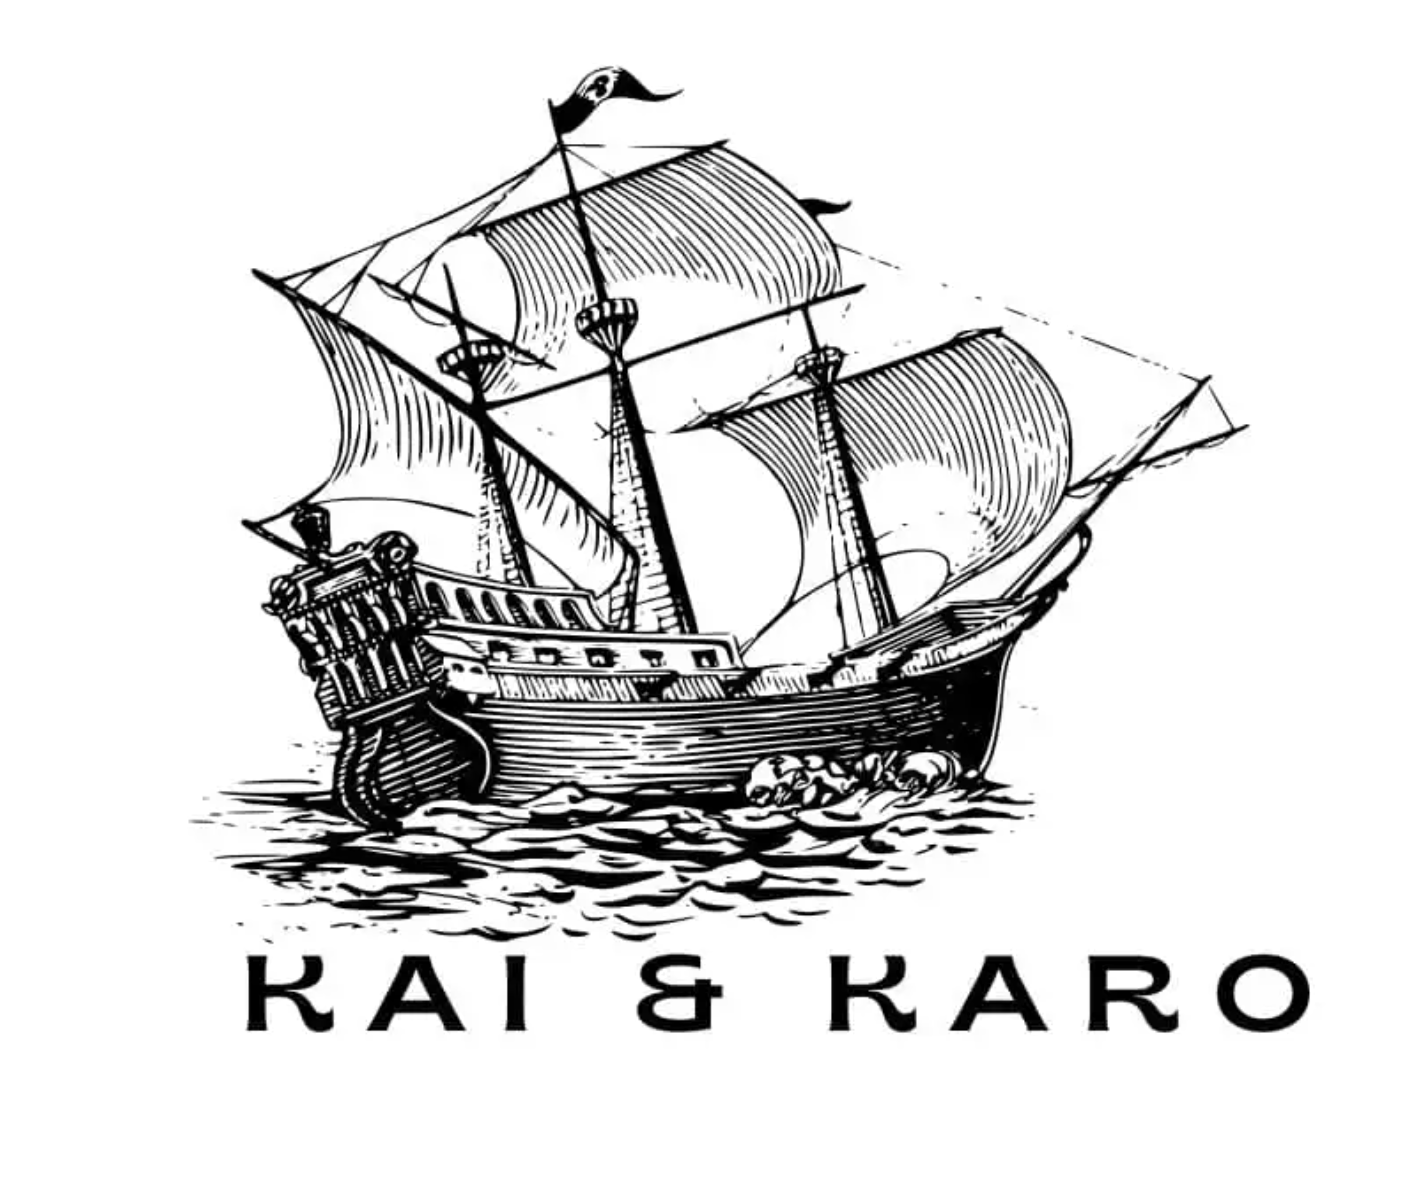 KAI & KAIRO